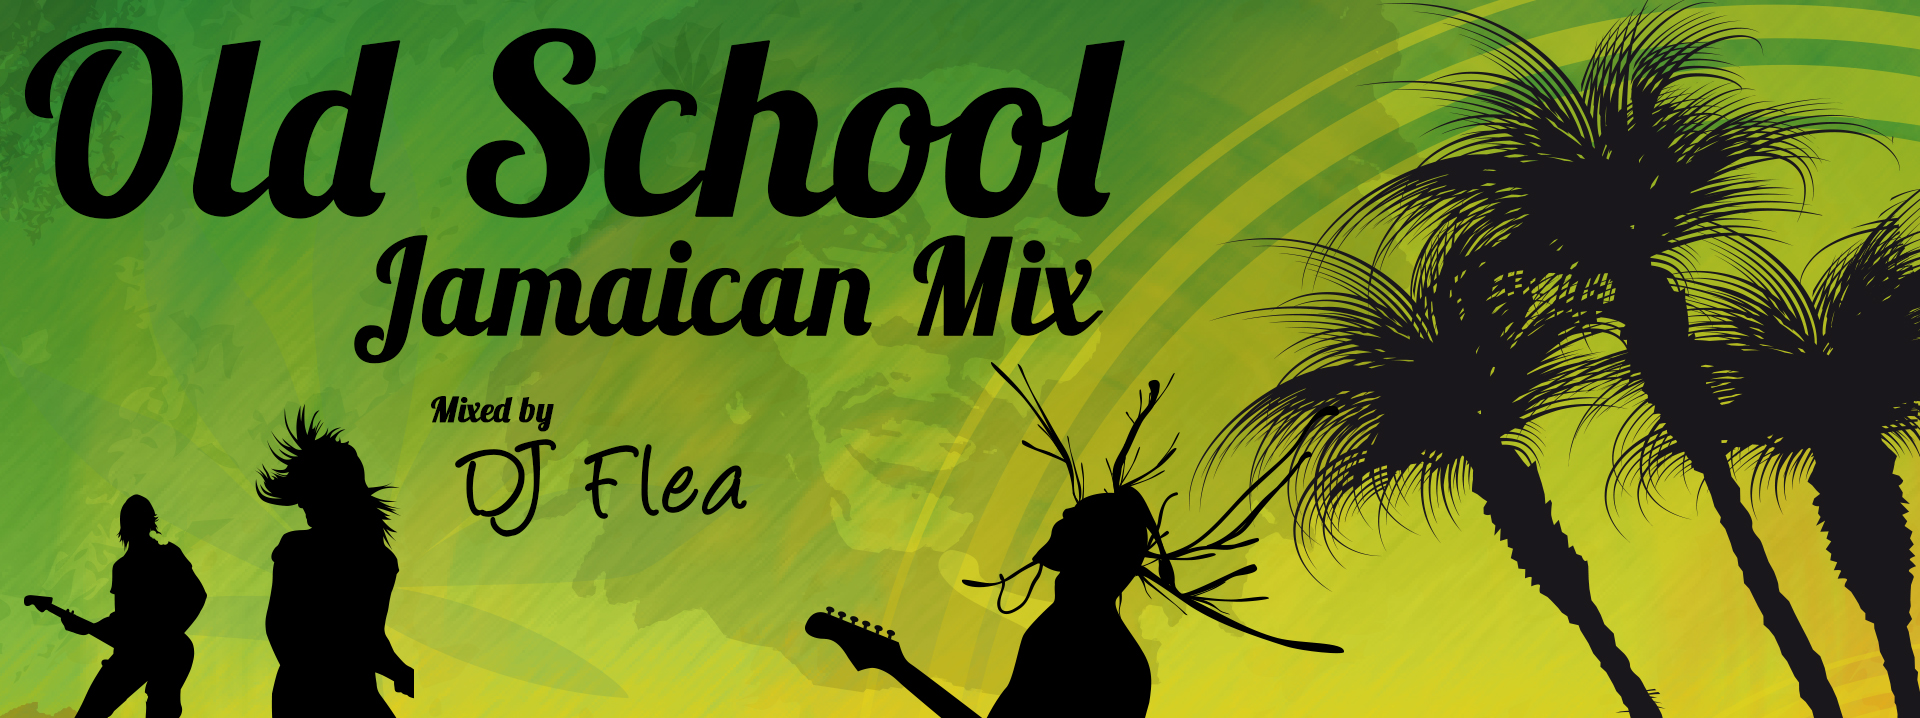 Old School Jamaican Mix